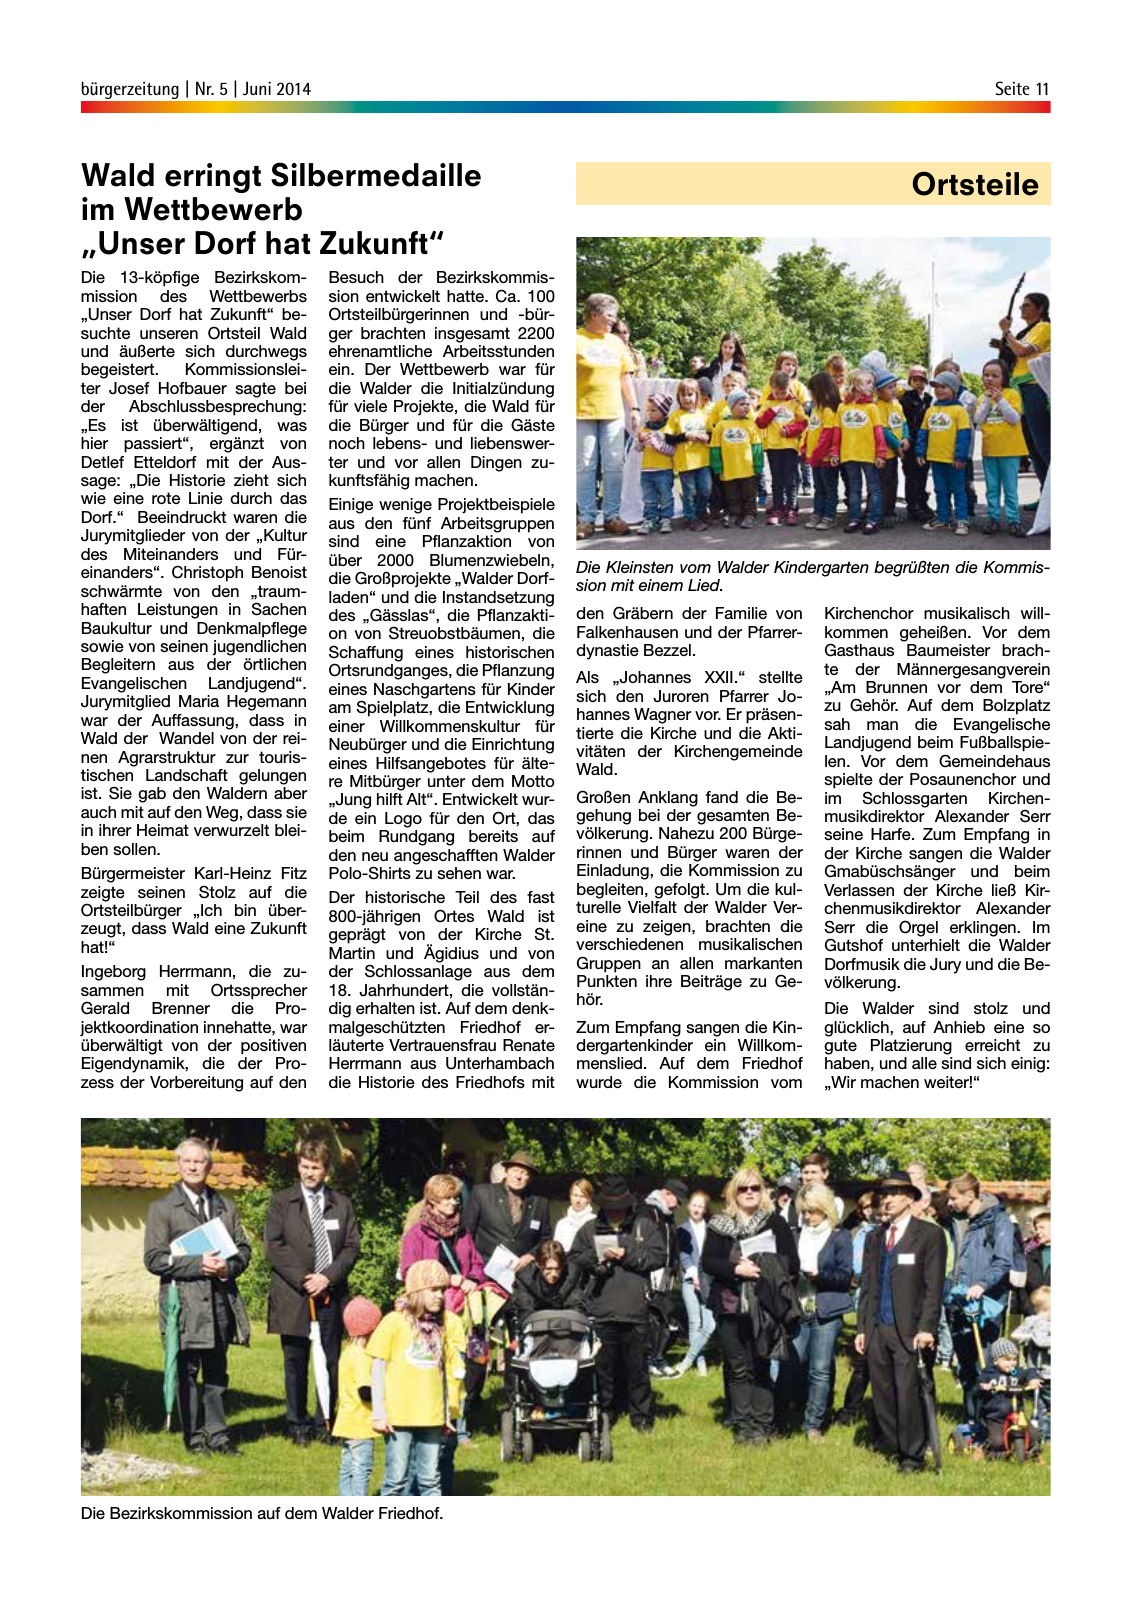 Vorschau buergerzeitung_Nr_5_Juni_2014 Seite 11